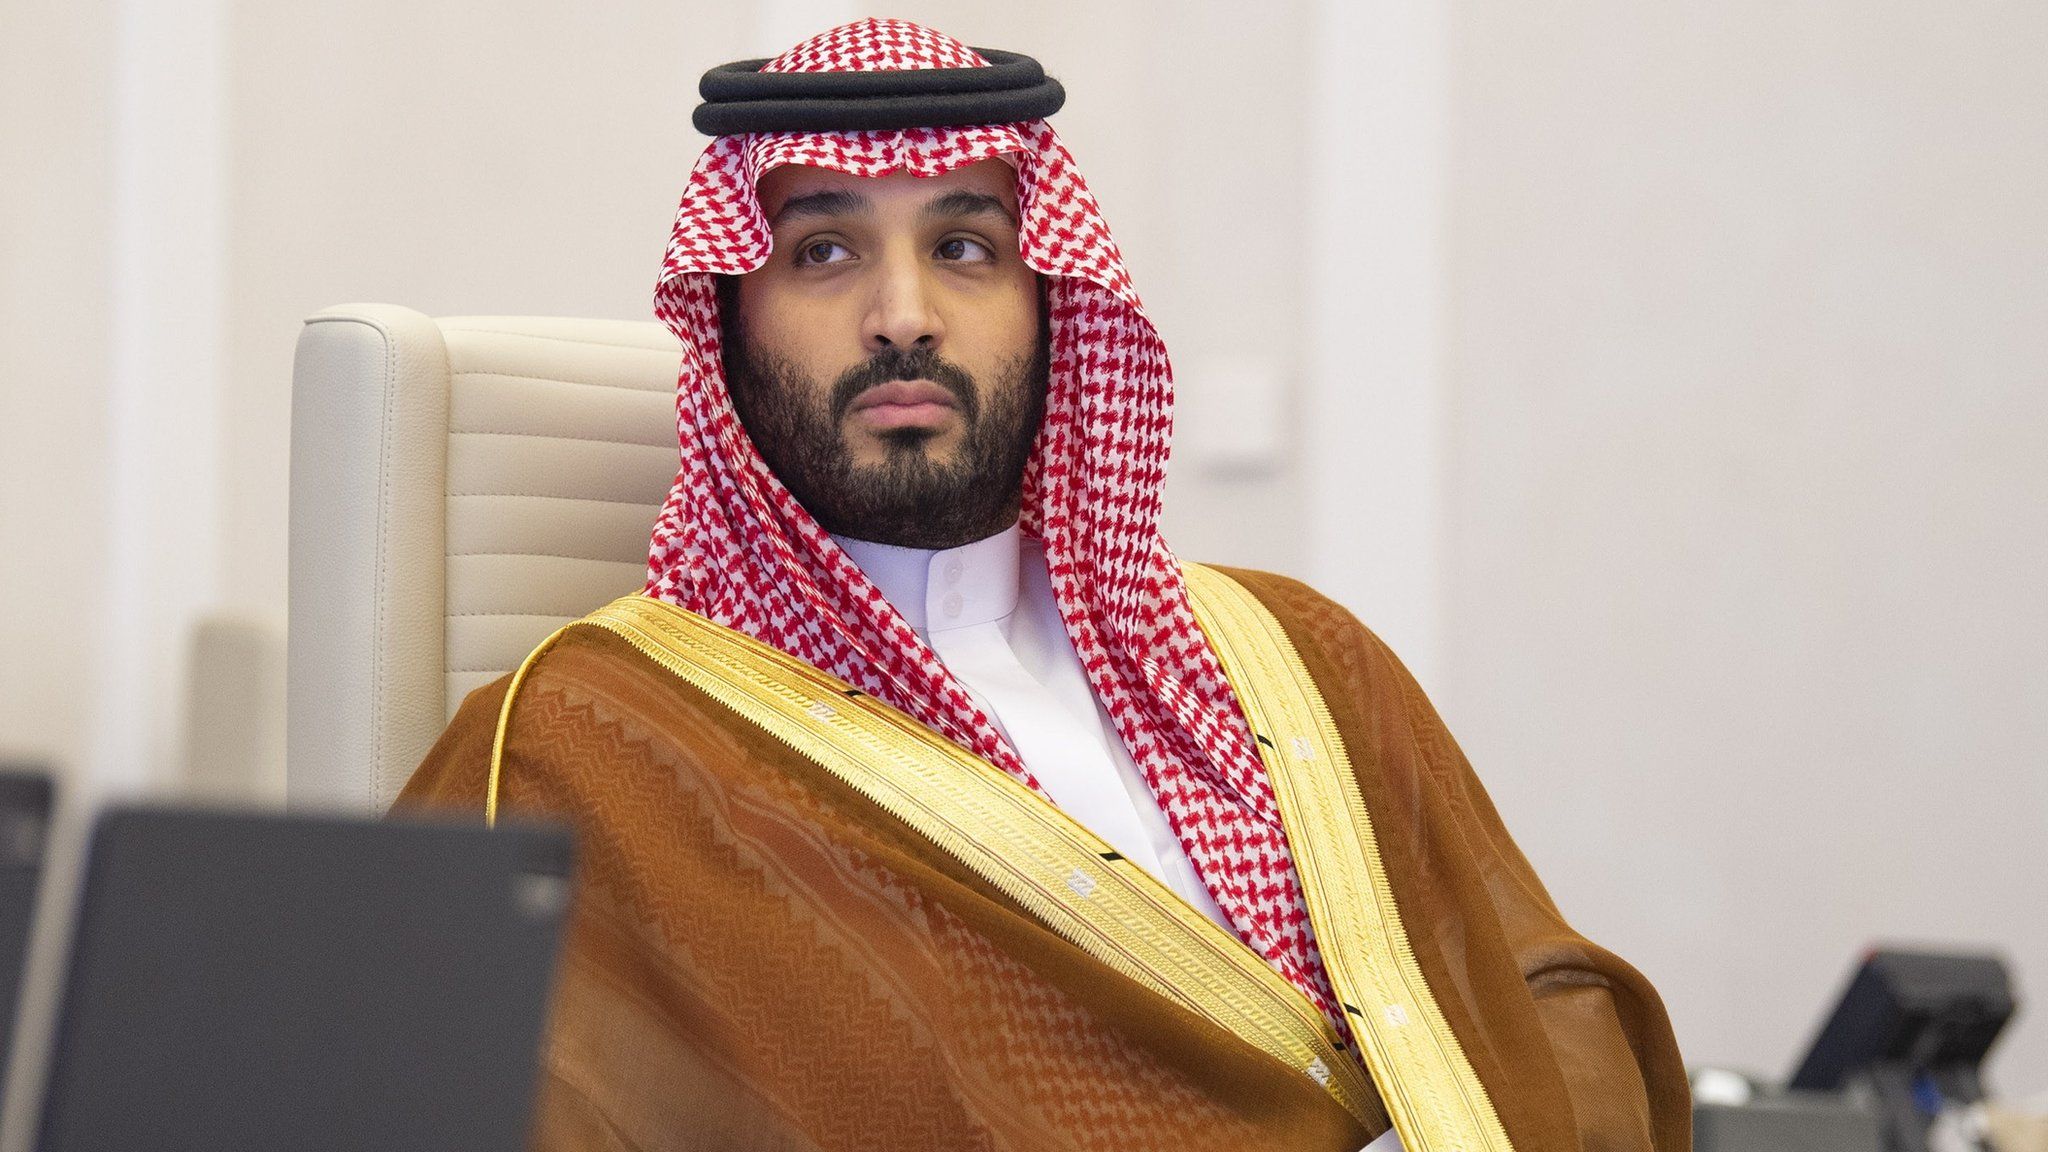 A handout photo shows Saudi Arabia's Crown Prince Mohammed bin Salman at the G20 Riyadh Summit, Riyadh, Saudi Arabia (21 November 2020)